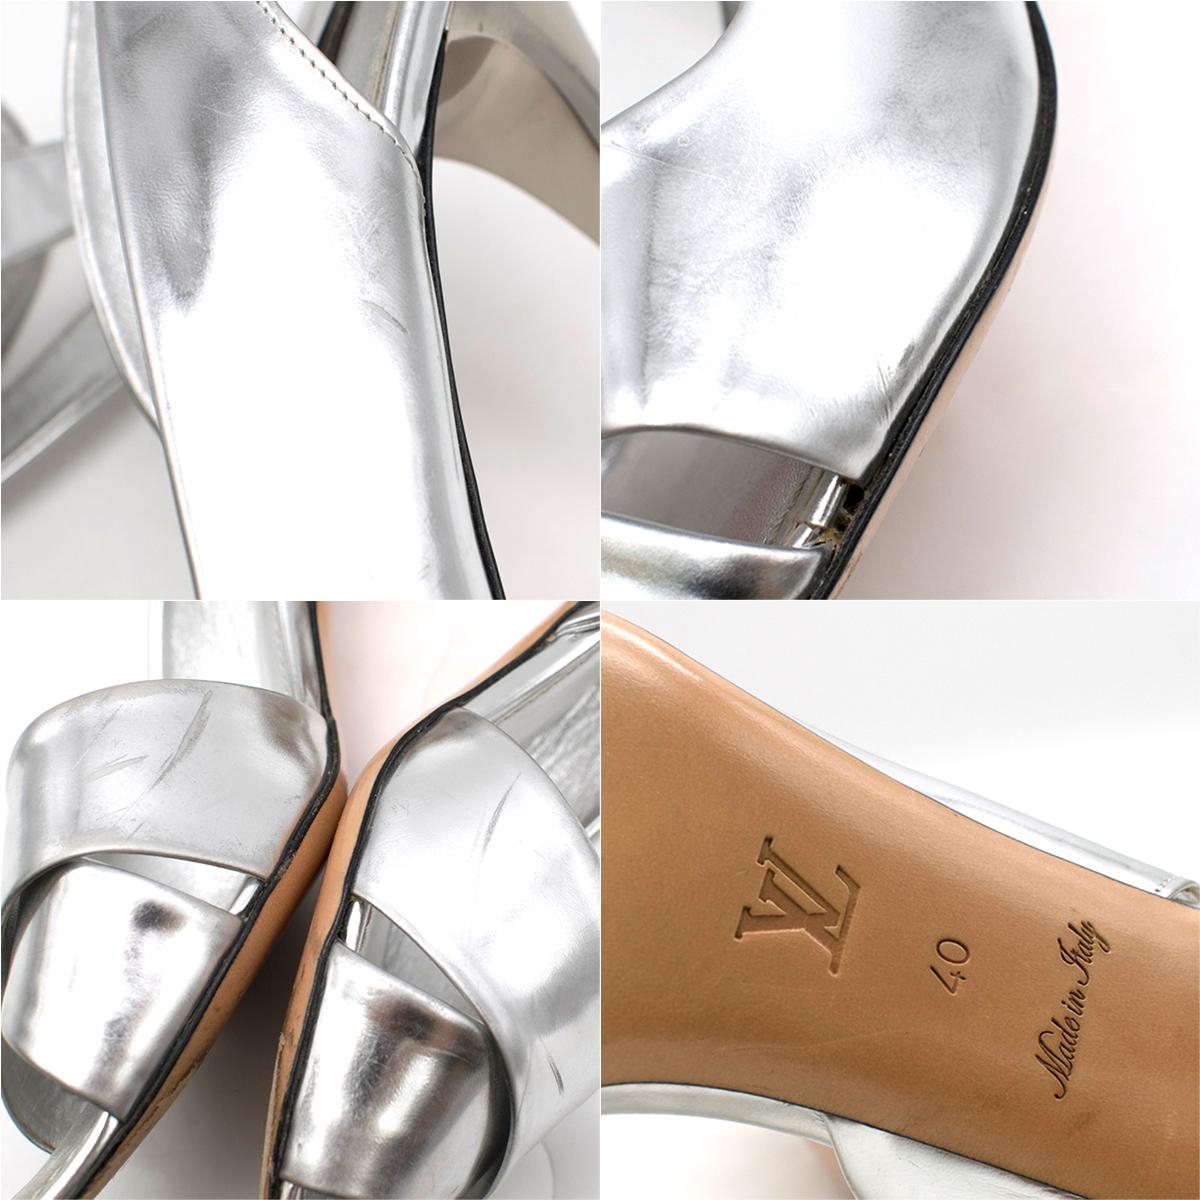 Louis Vuitton Silver Heeled Sandals SIZE EU 40 2